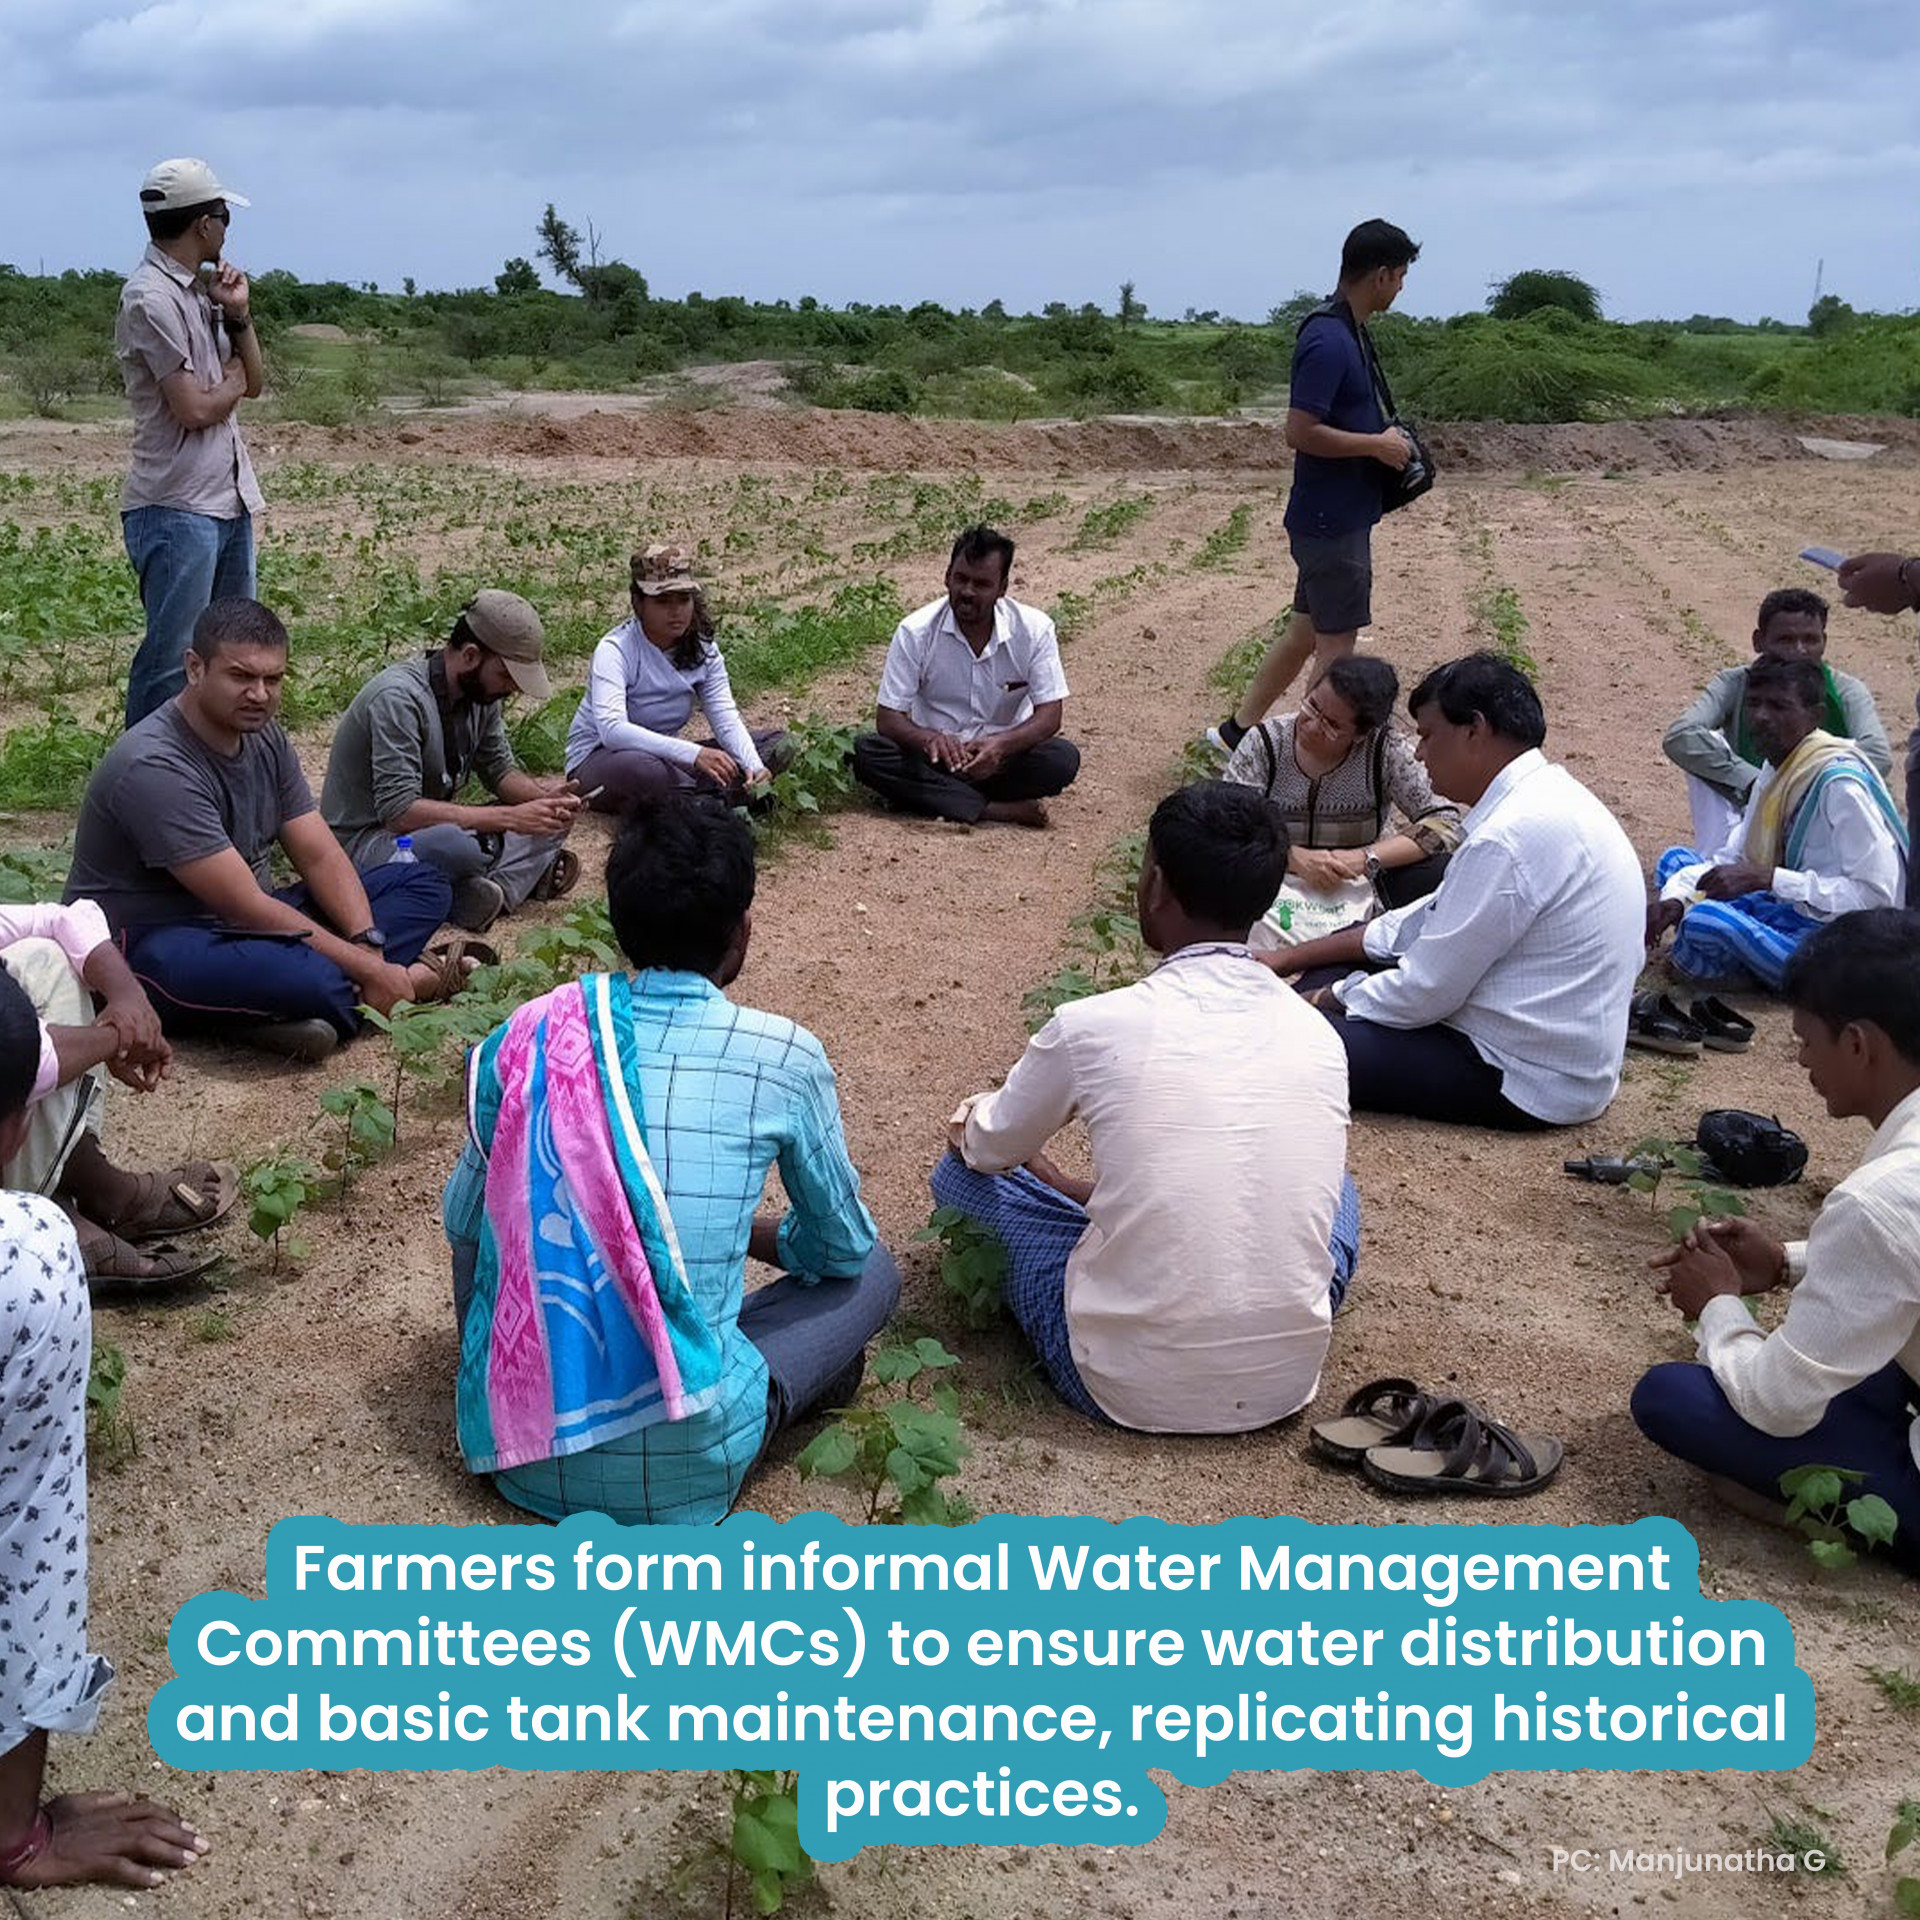 management of water common_Rashmi_mahajanSlide7